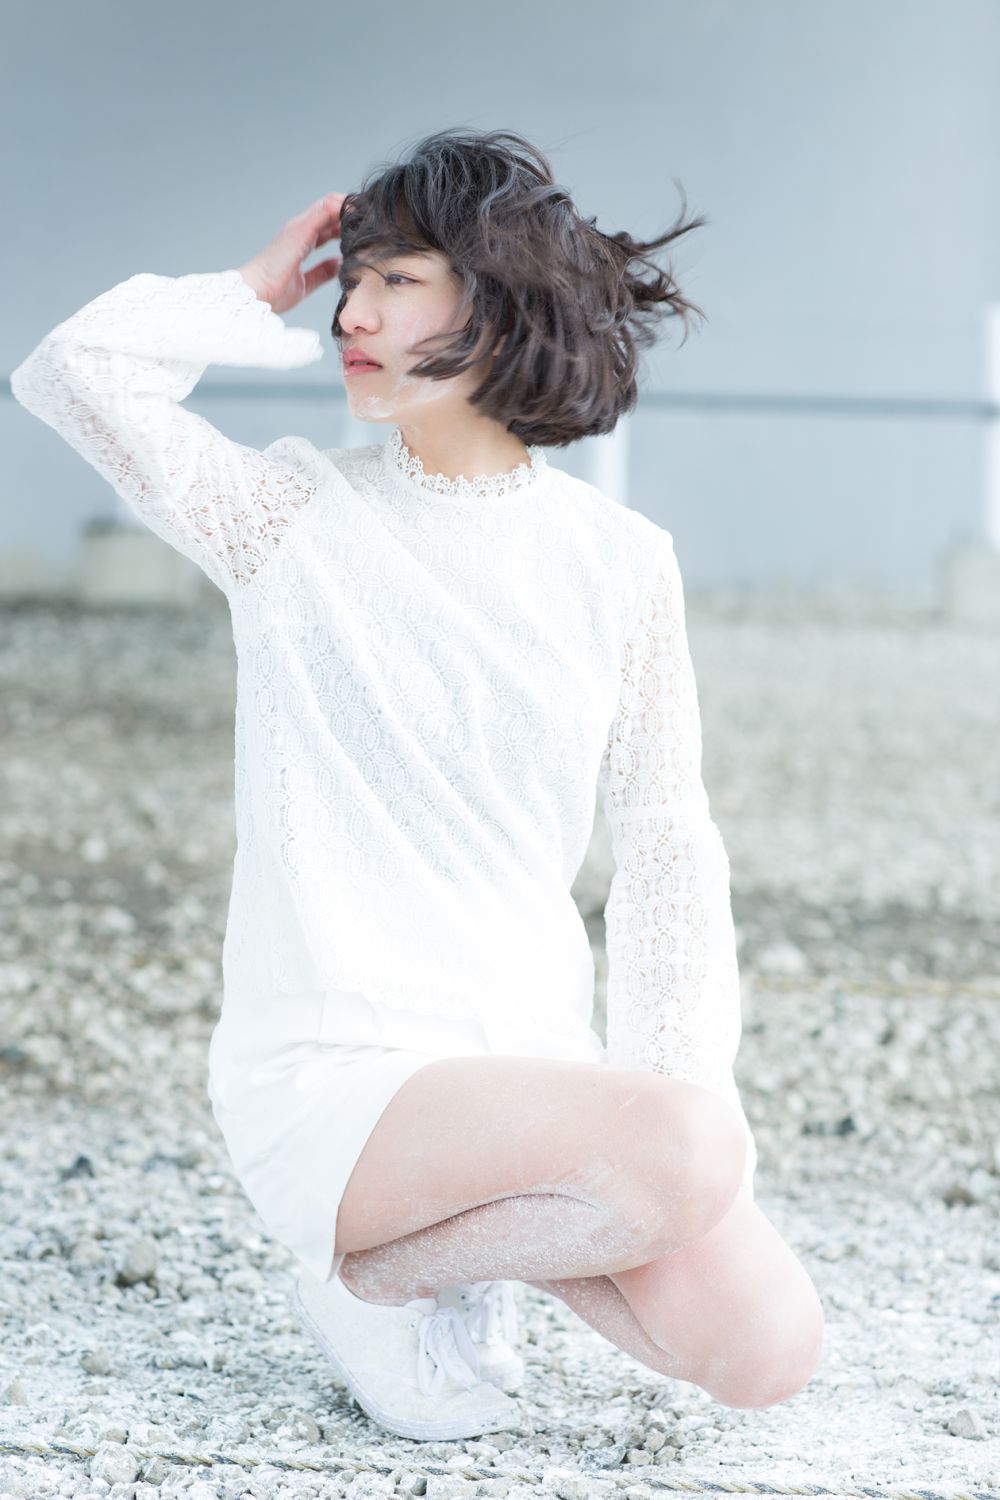 Miki Kanai Sexy and Hottest Photos , Latest Pics